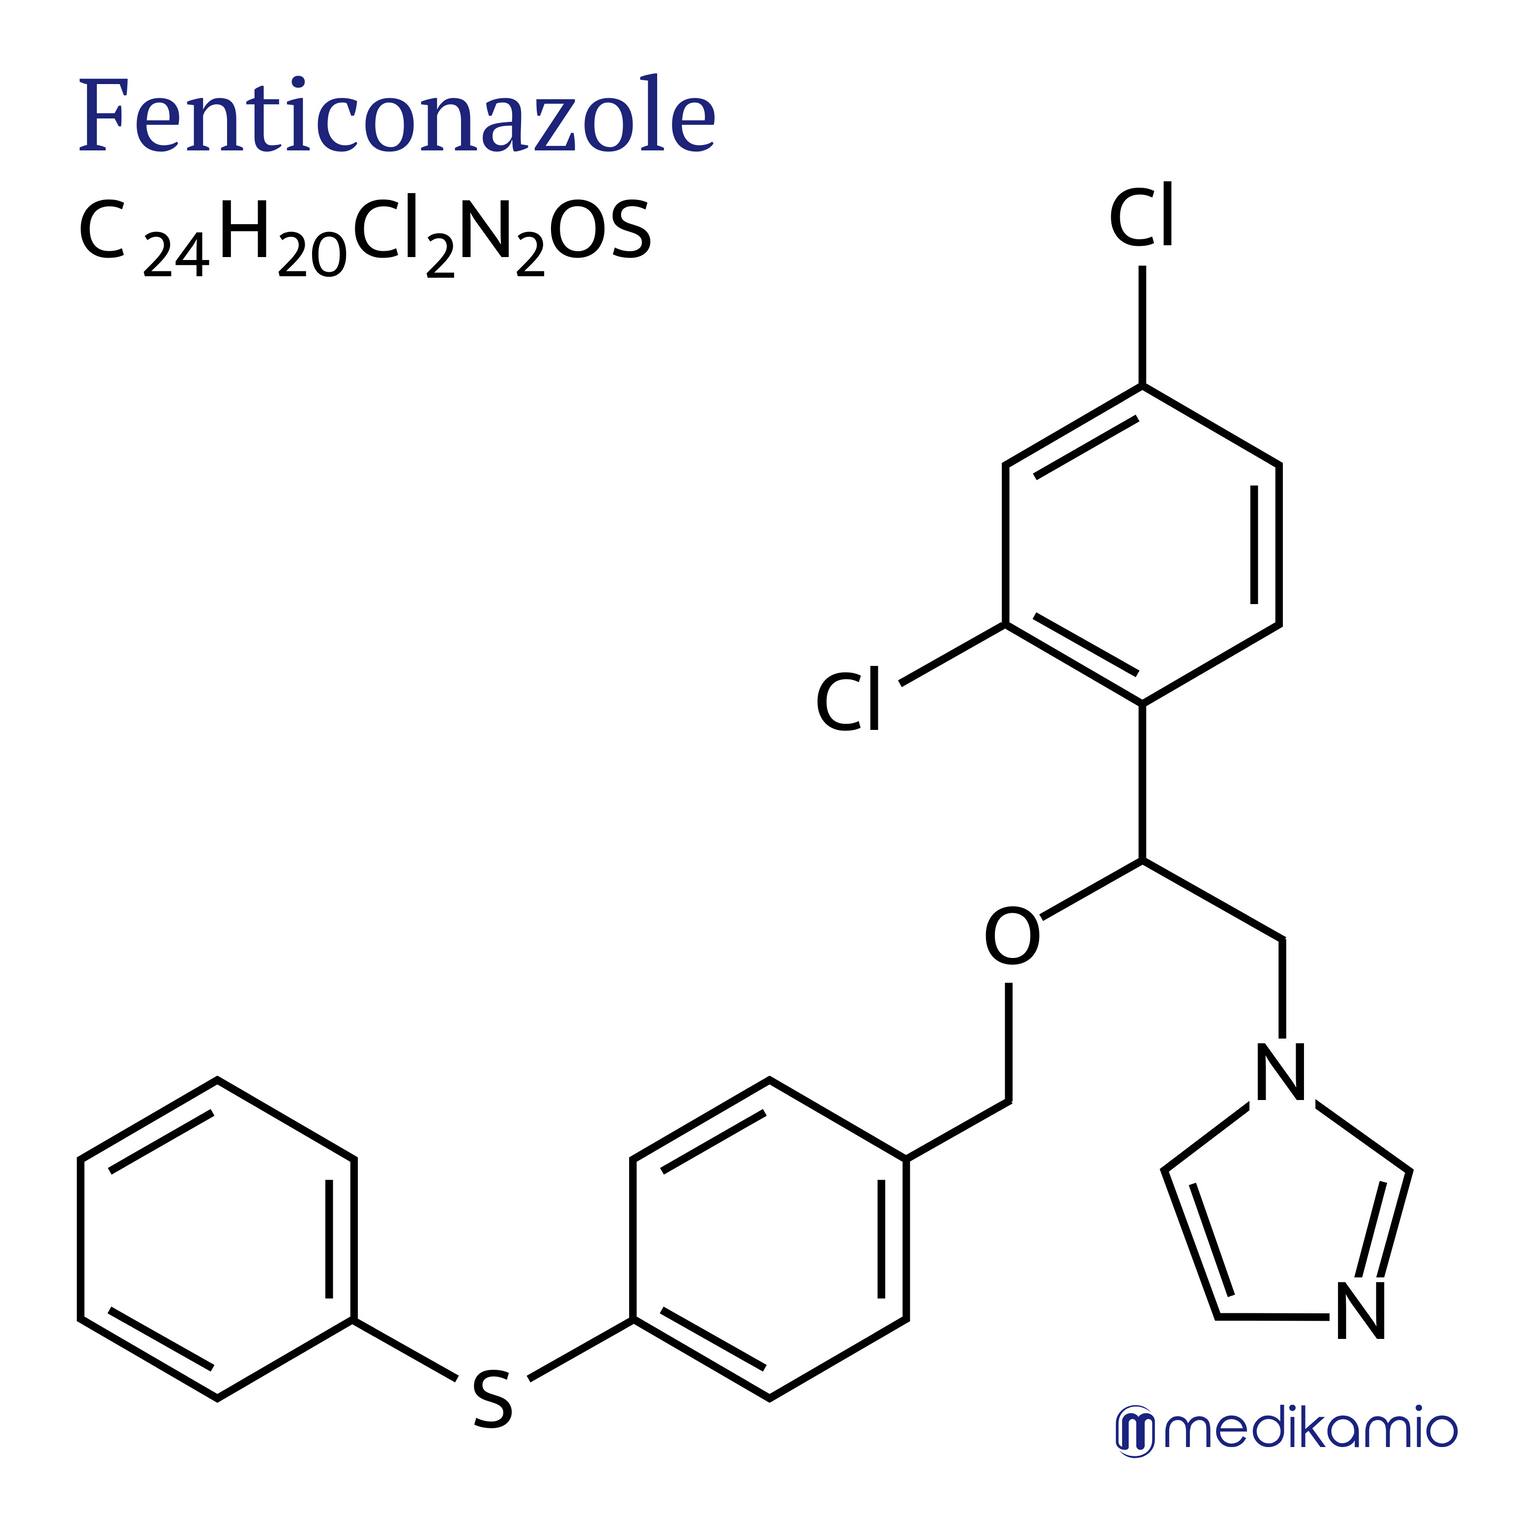 Fórmula estructural gráfica del principio activo fenticonazol